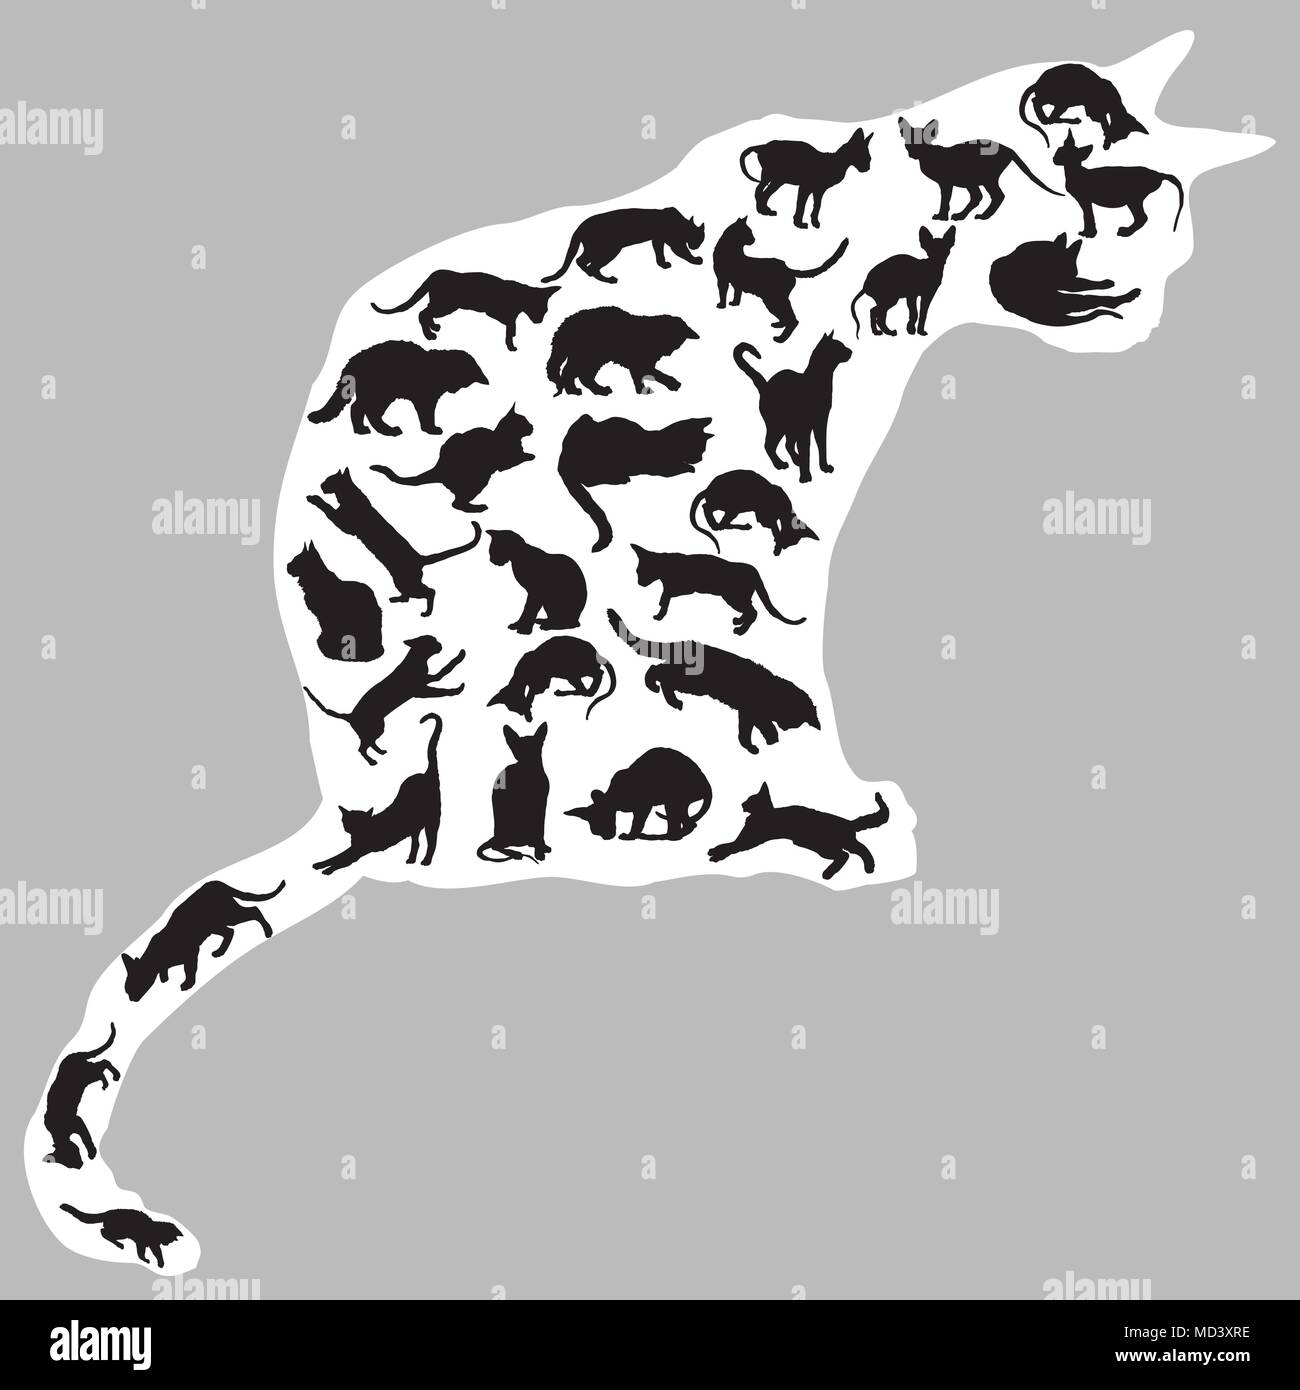 Jeu de chats isolés différentes silhouettes (assis, debout, couché, jouant) en couleur noir à l'intérieur grand salon silhouette de chat de couleur blanche. Gr Illustration de Vecteur